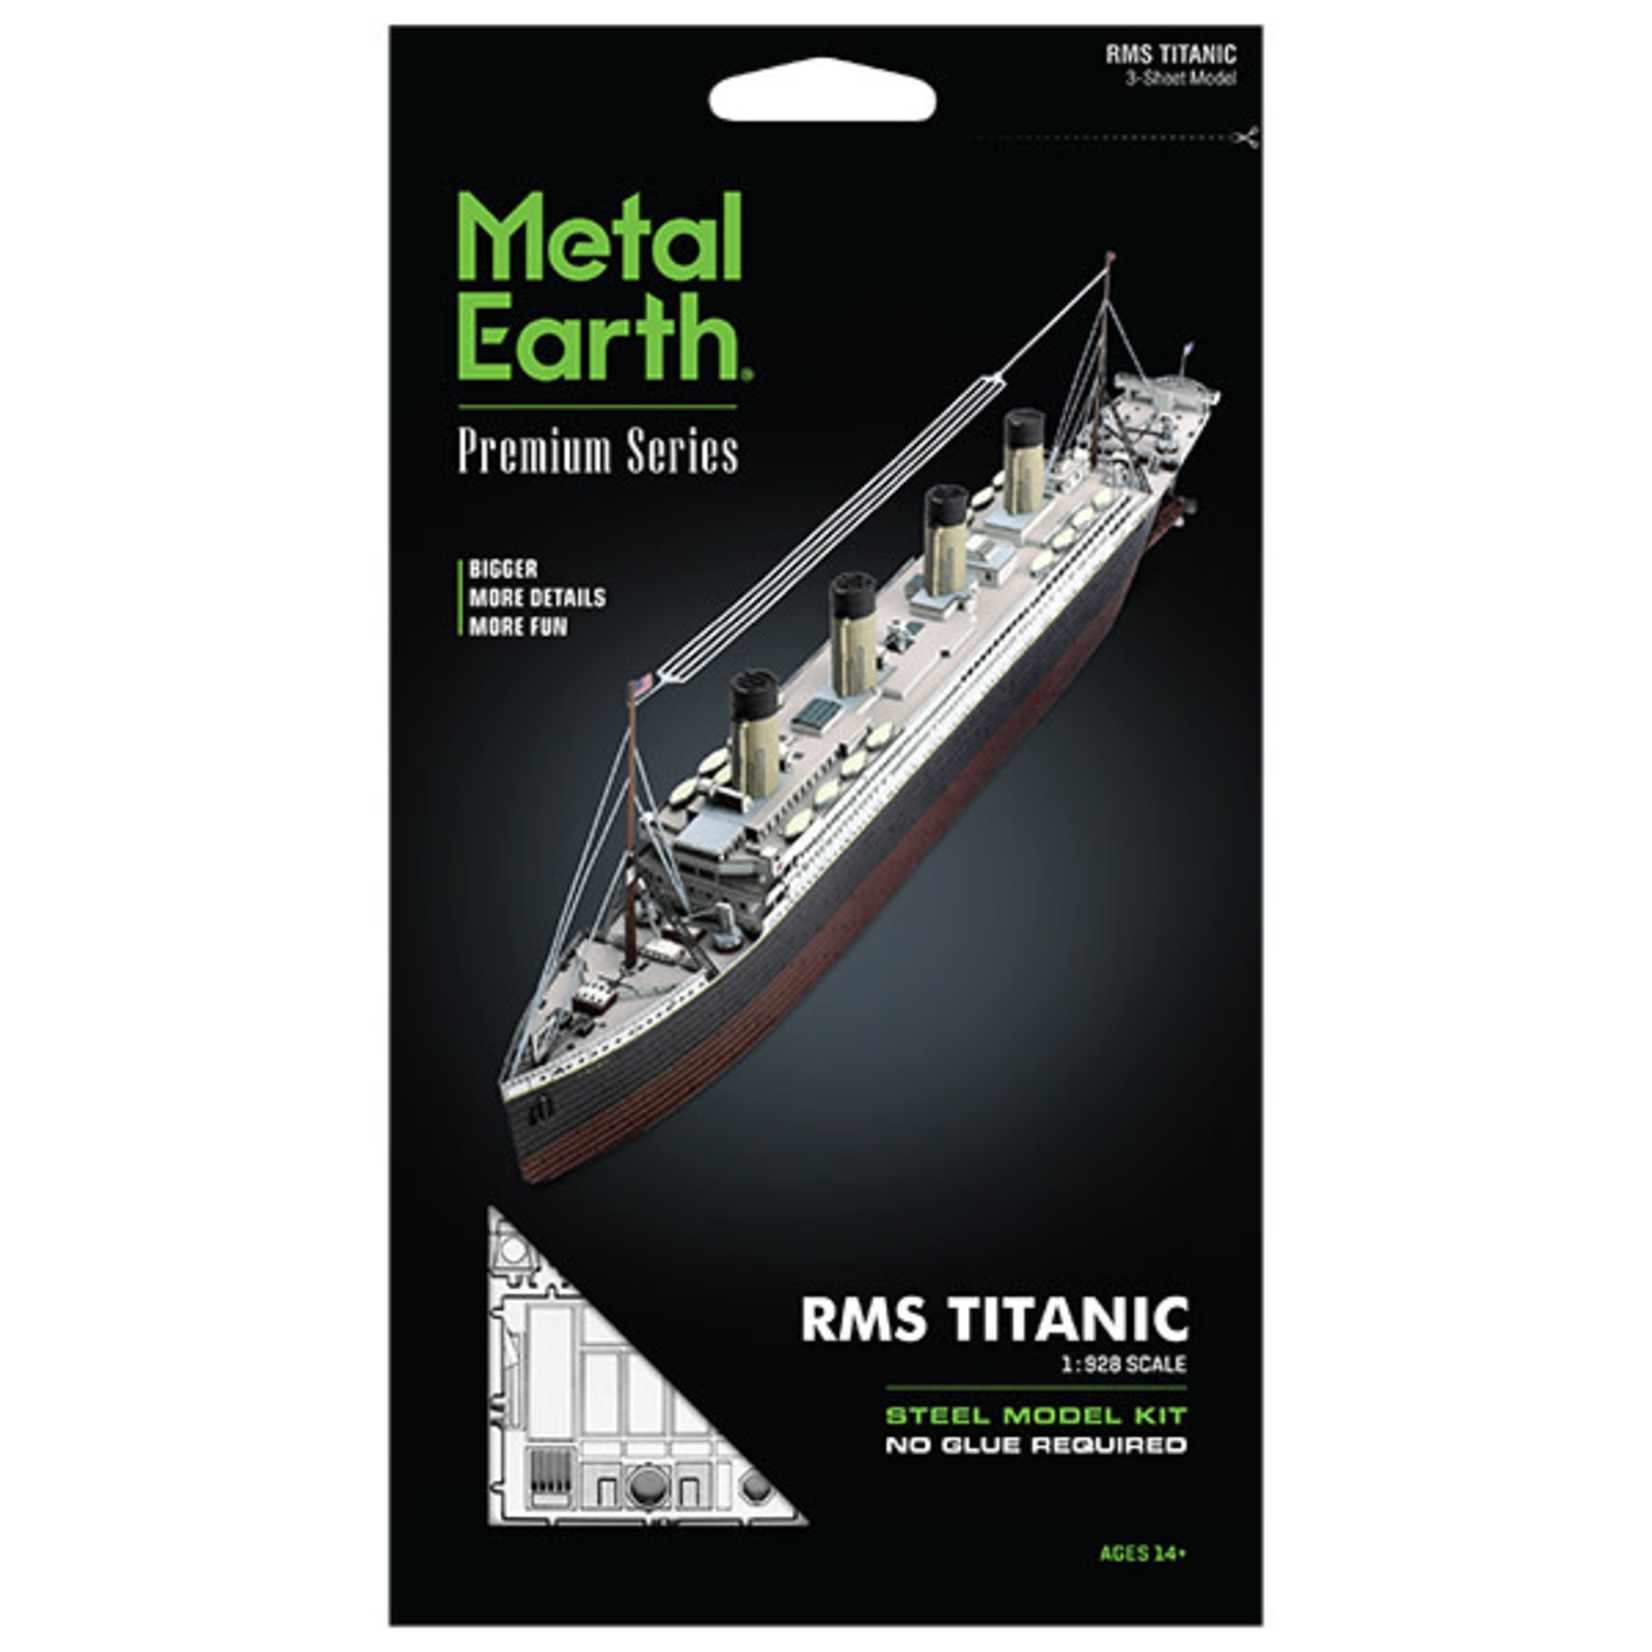 Metal Earth PS2004 RMS Titanic